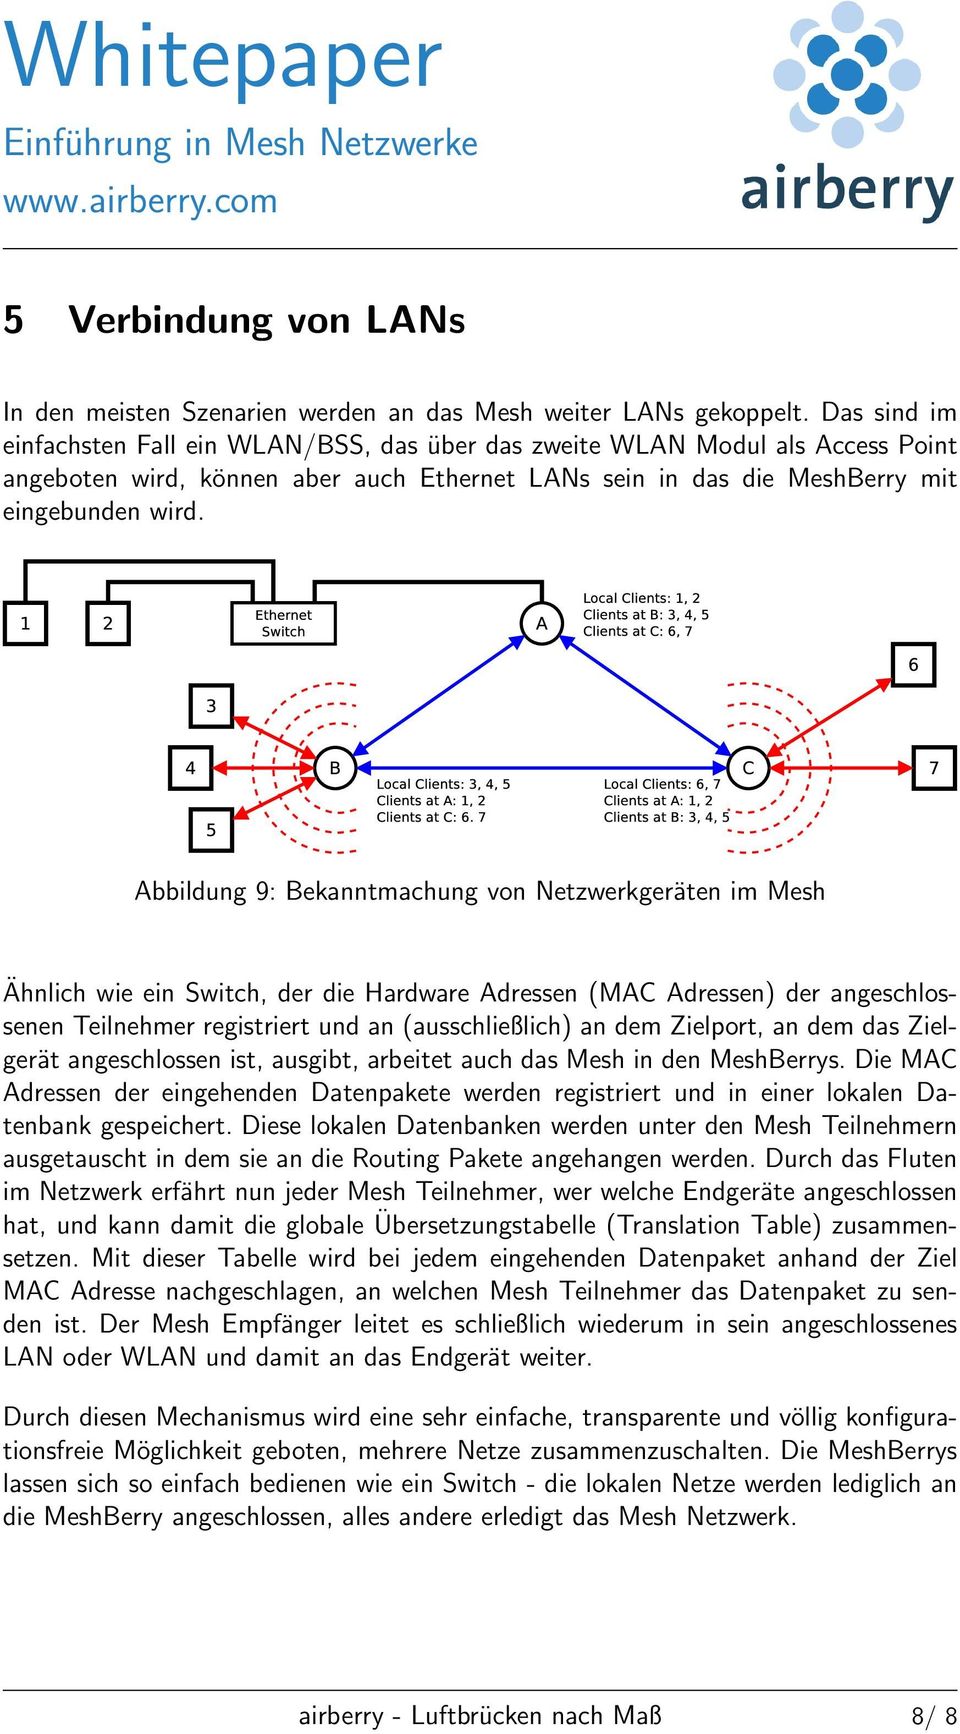 Abbildung 9: Bekanntmachung von Netzwerkgeräten im Mesh Ähnlich wie ein Switch, der die Hardware Adressen (MAC Adressen) der angeschlossenen Teilnehmer registriert und an (ausschließlich) an dem